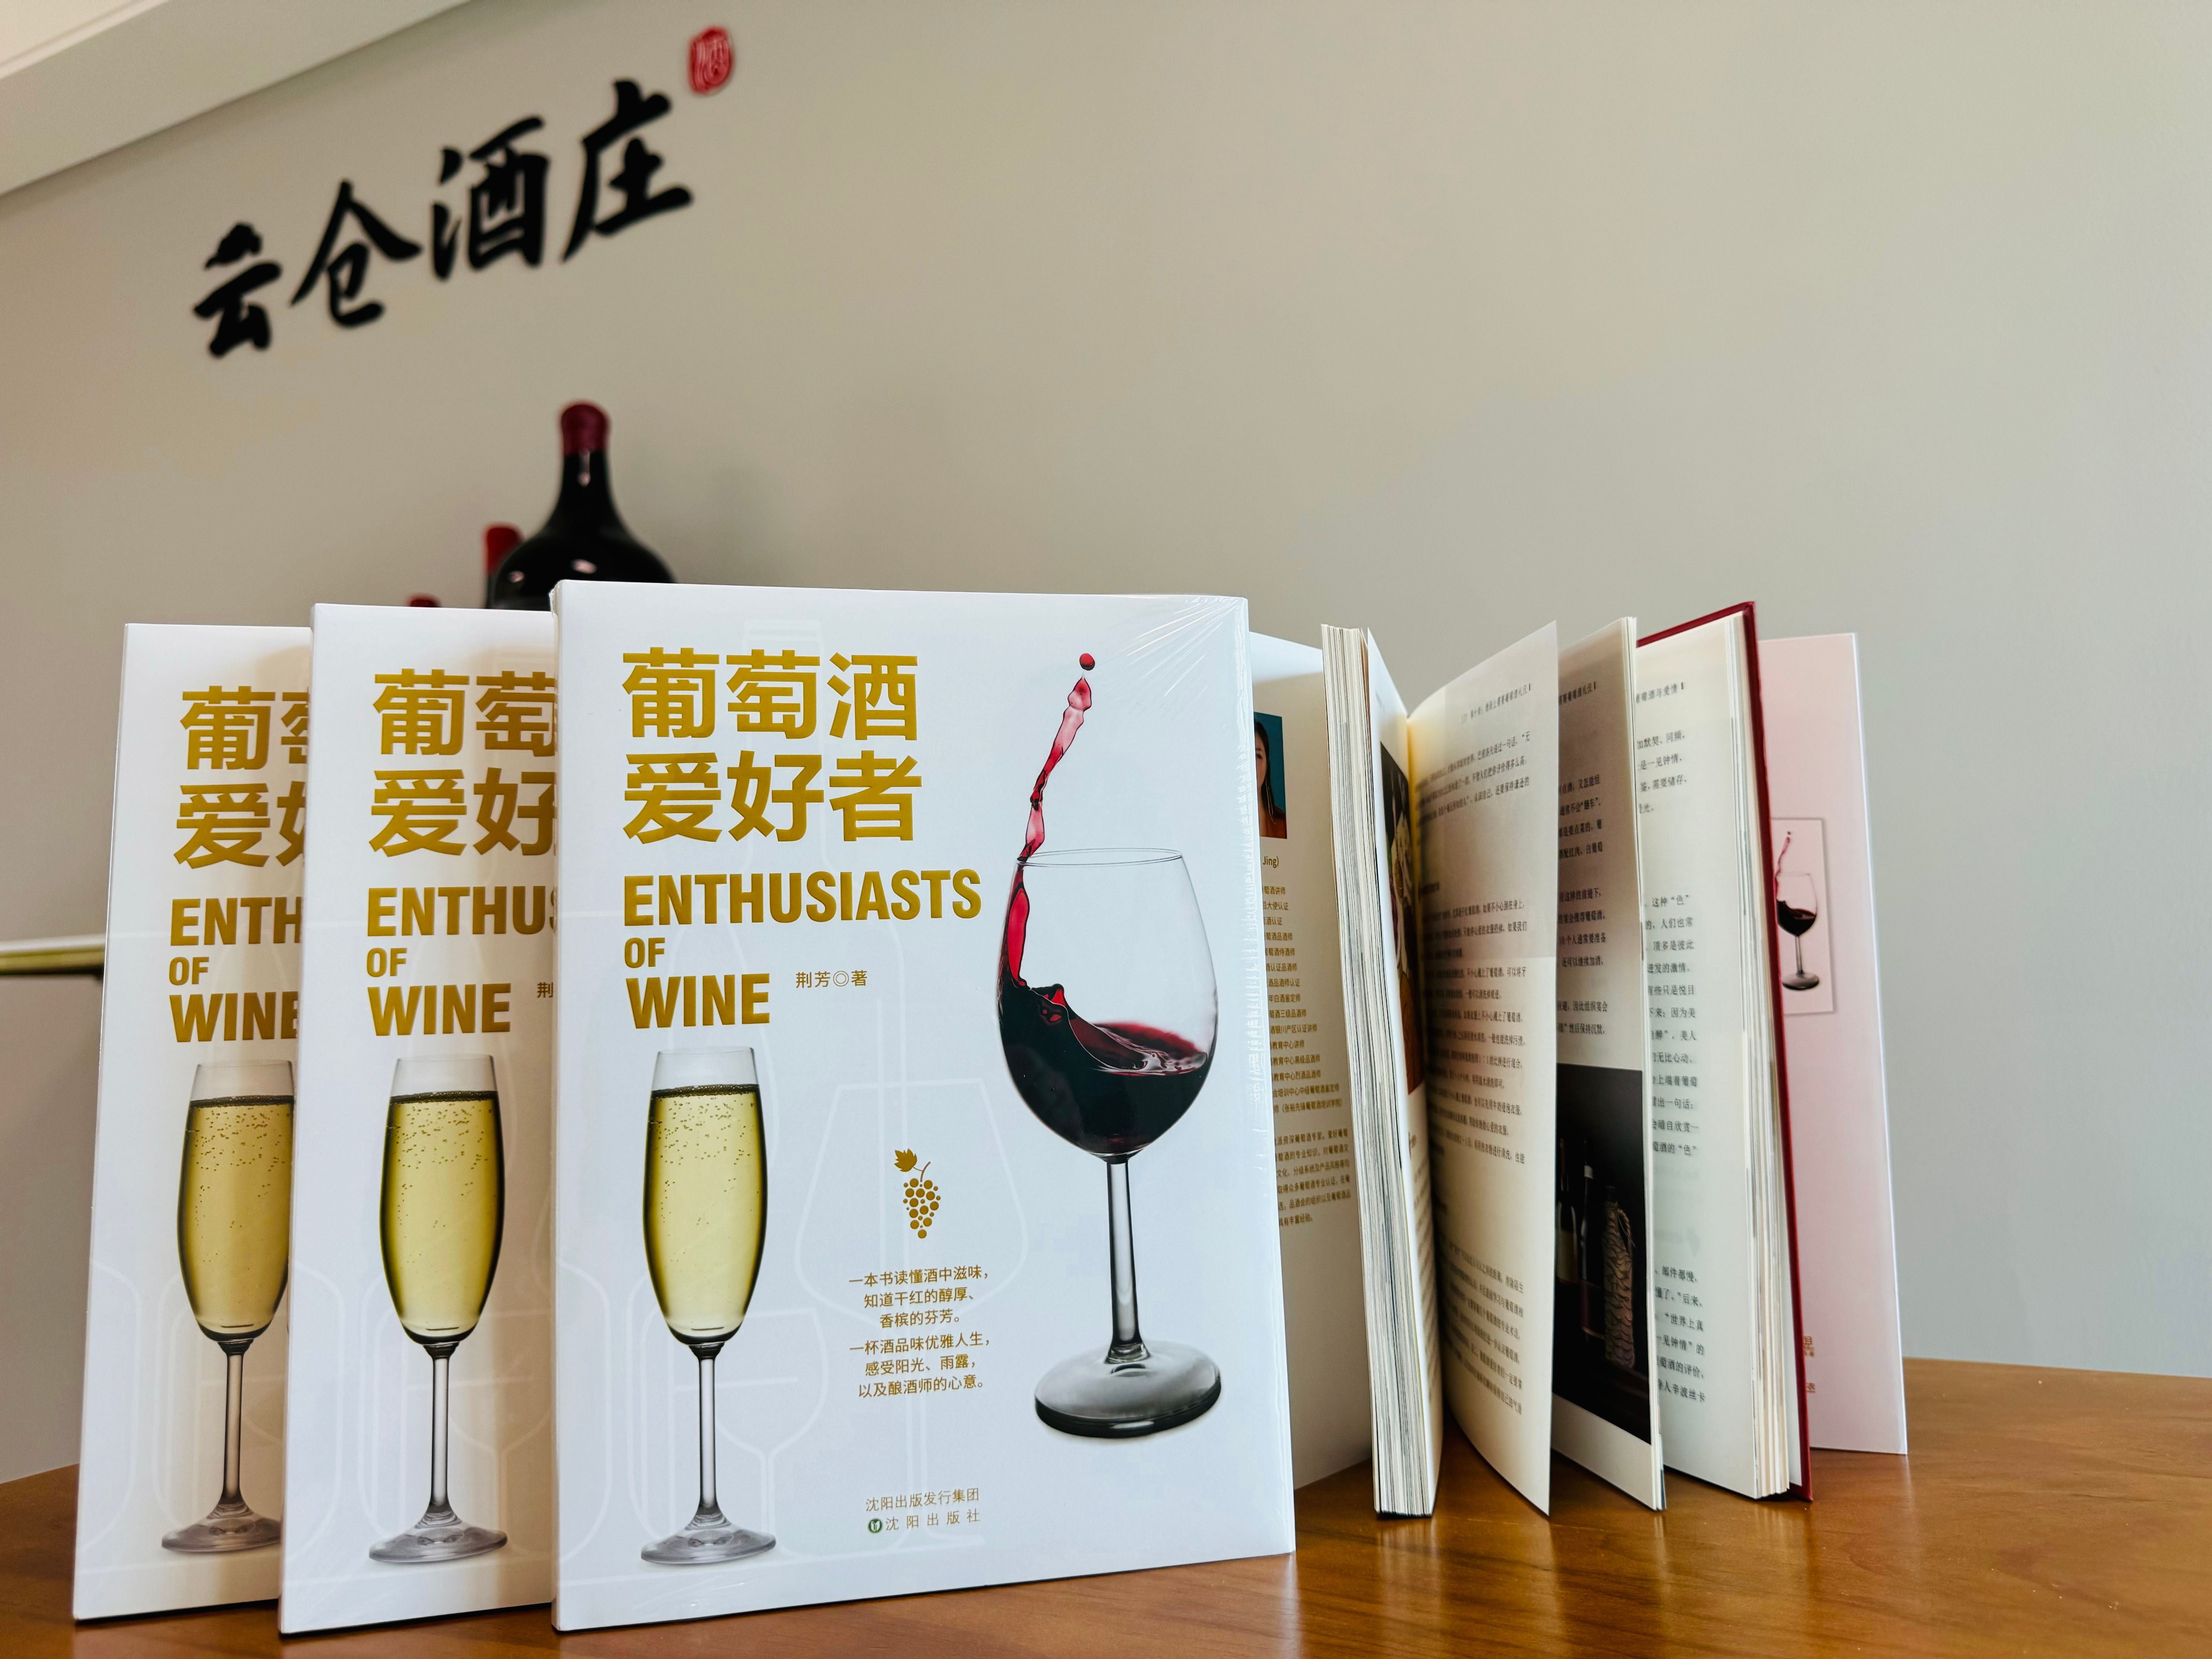 品酒师荆芳老师的《葡萄酒爱好者》图书上线